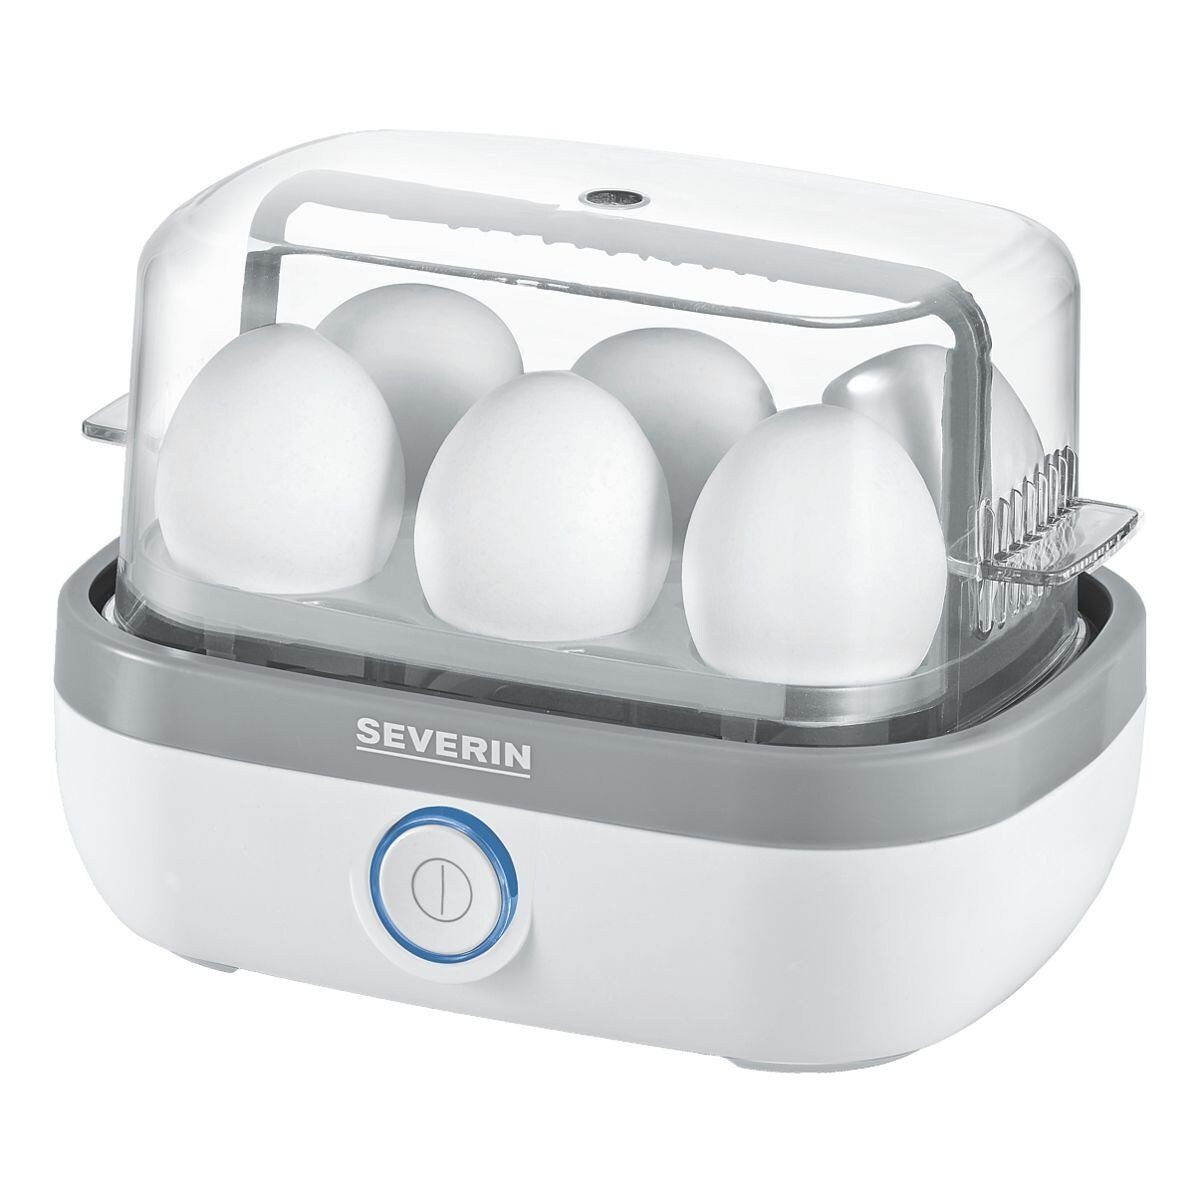 EK 6 für mit Eier, Kochzeitüberwachung, W elektronischer 420 W, Eierkocher Severin 3164, 420